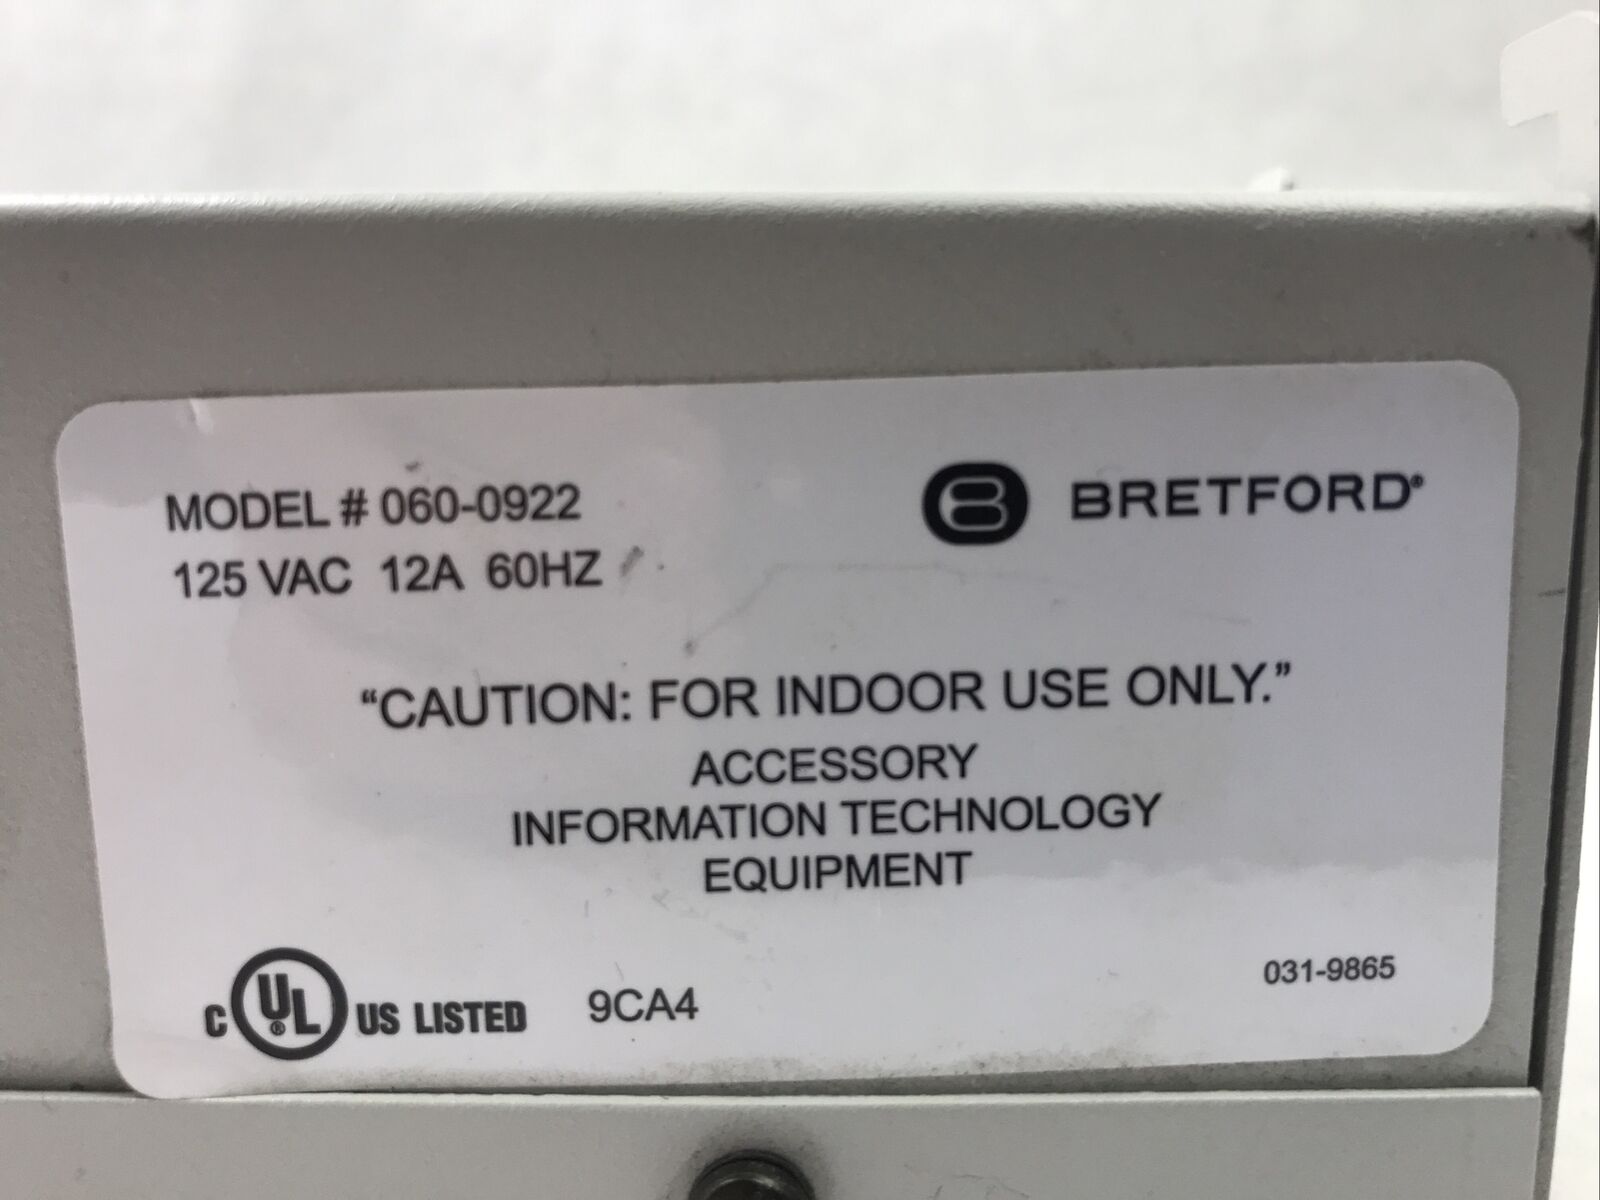 Bretford 060-0922 Power Strip 125 VAC 12A 60HZ 6 Outlet